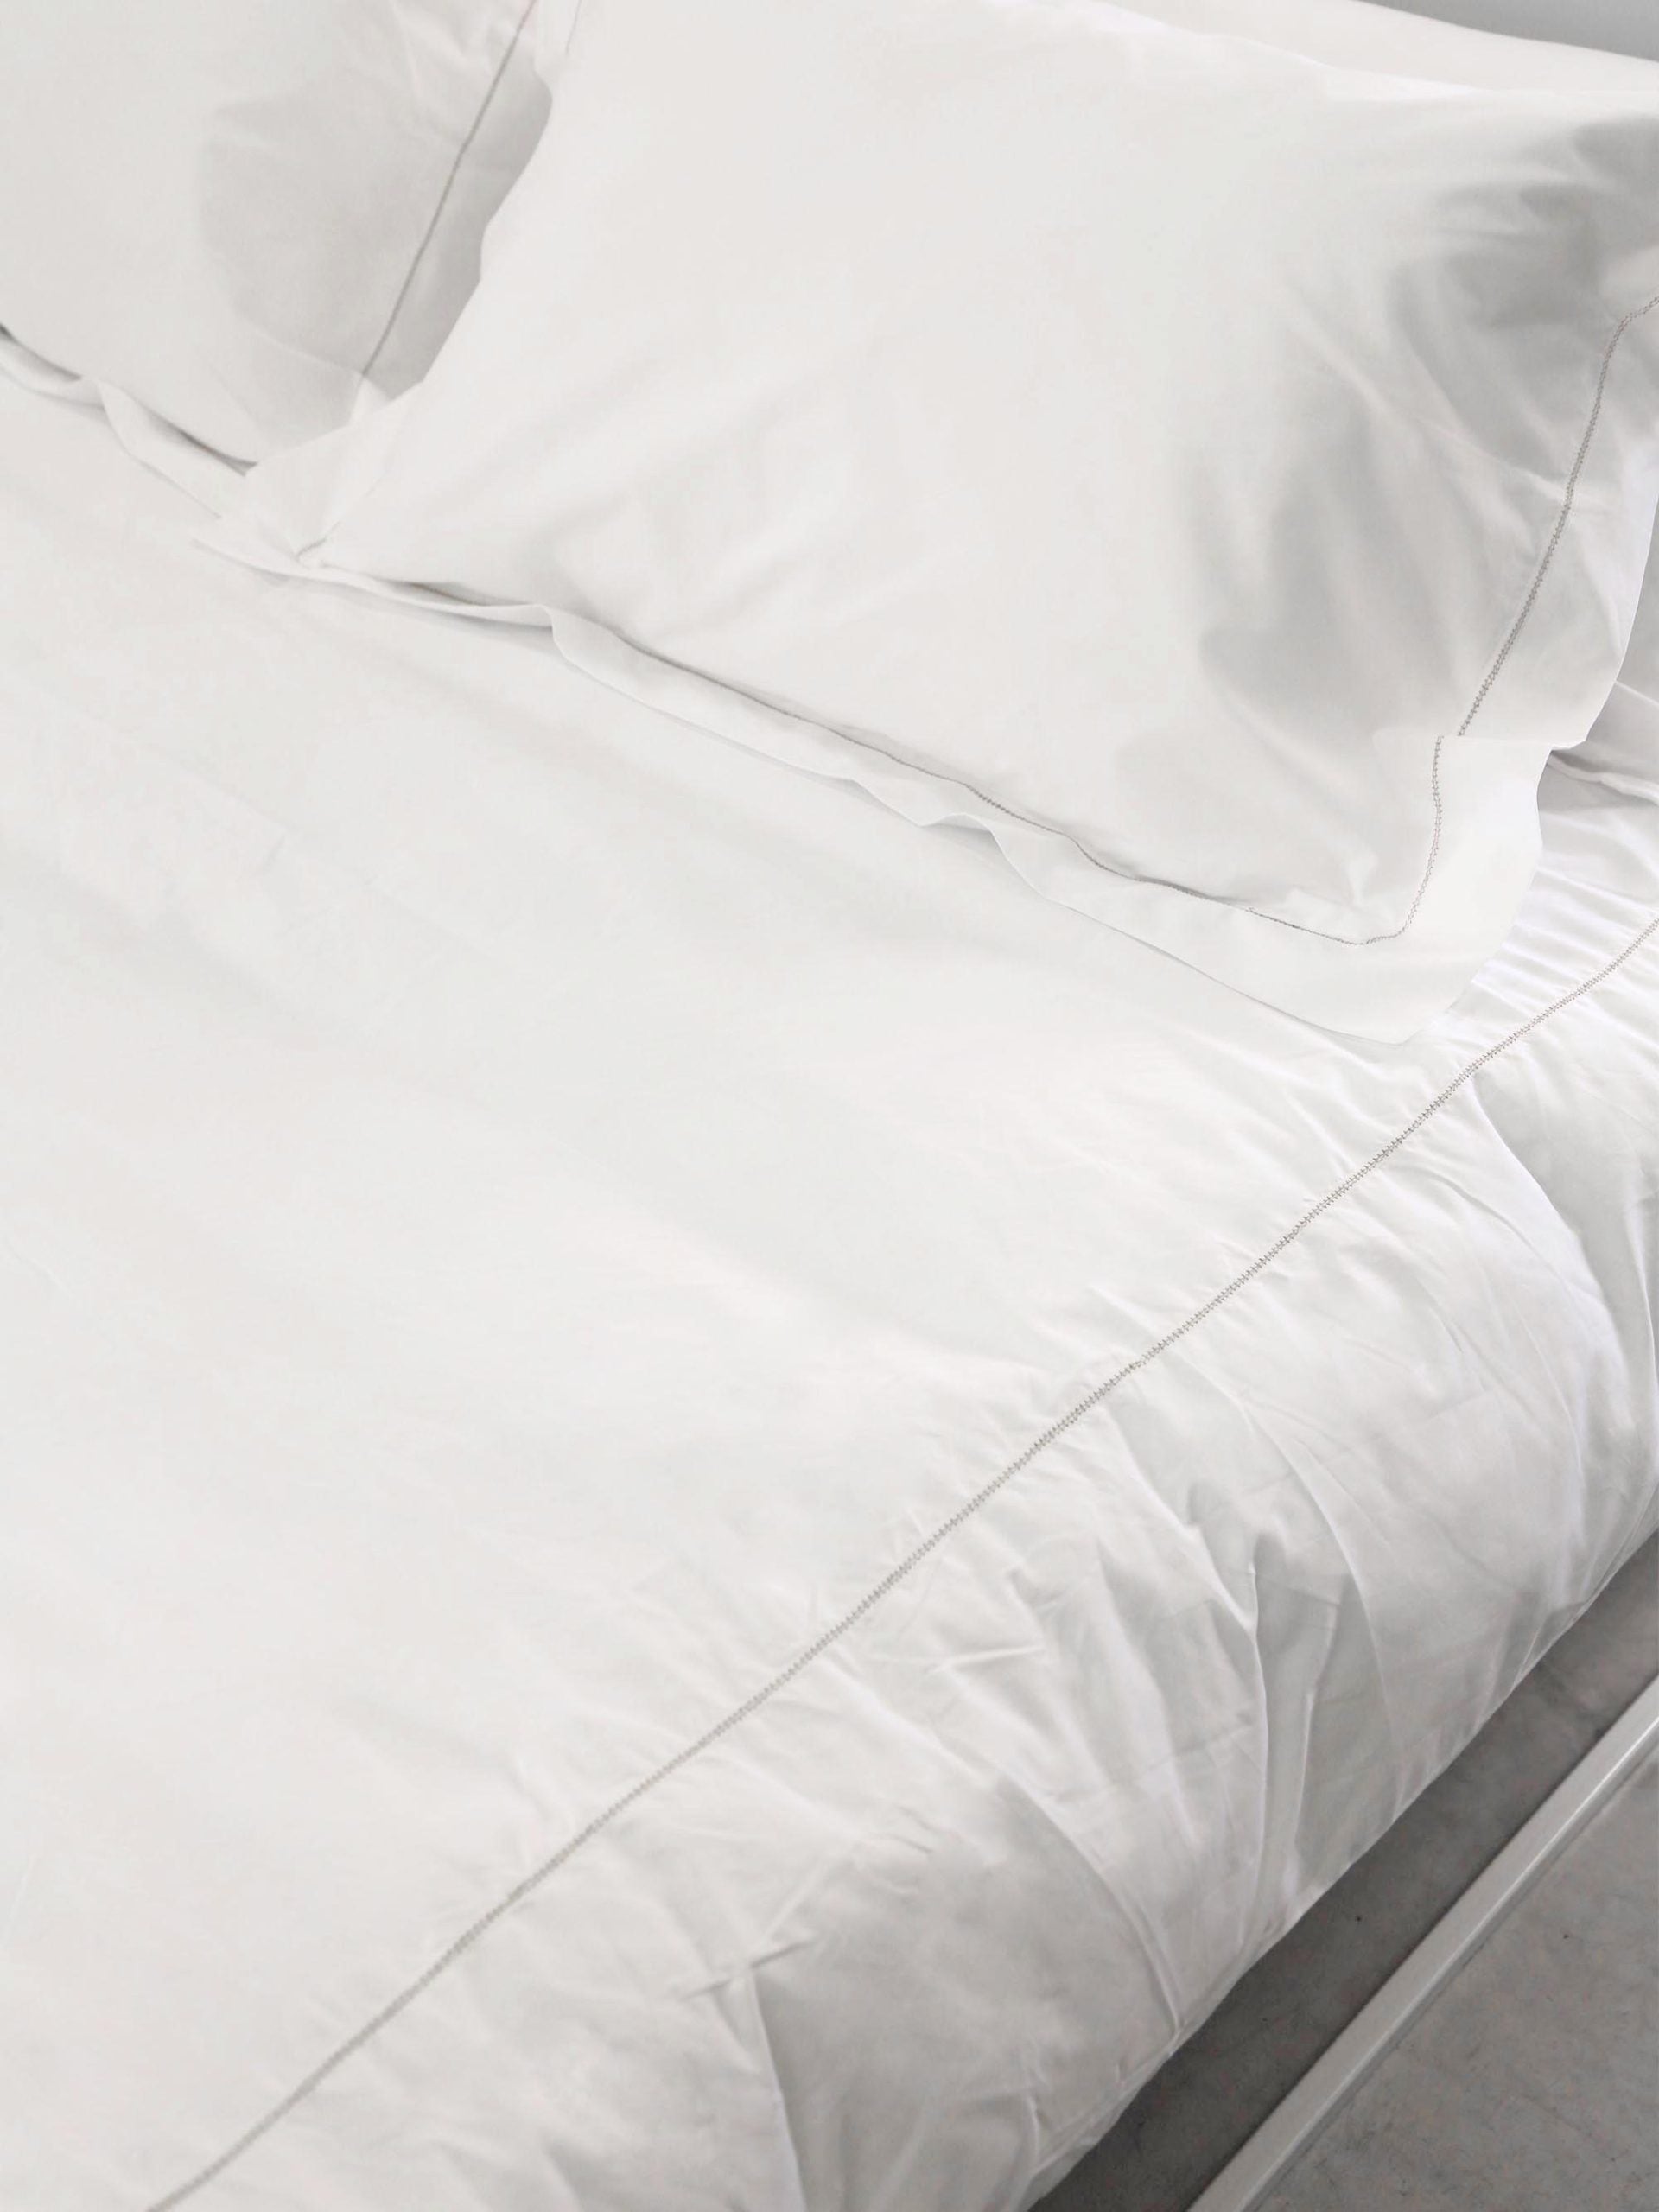 מצעים על מיטת ברזל לבנה הכוללים כריות עם ציפיות ושמיכה עם ציפה